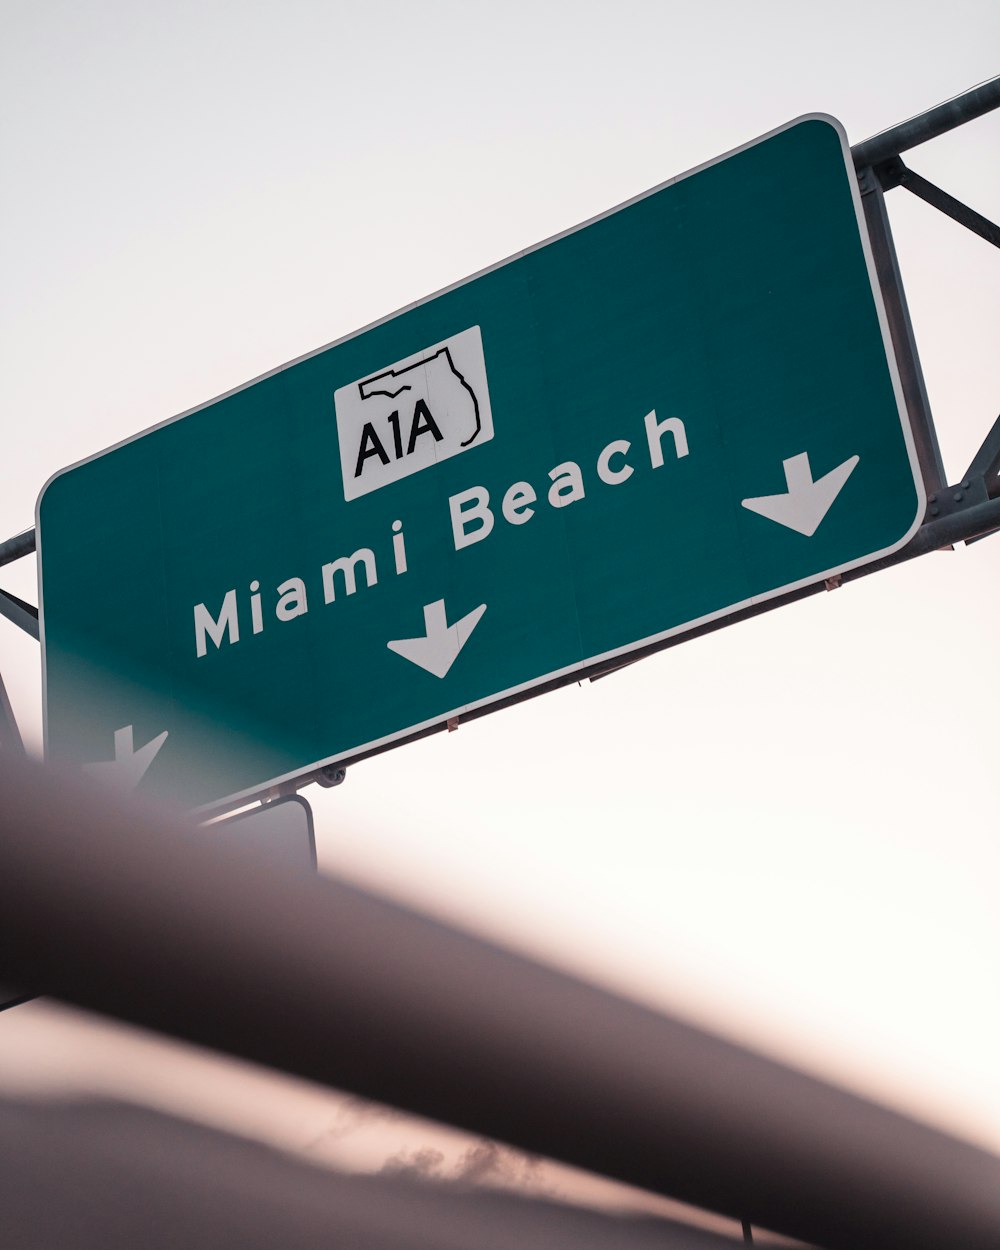 Sinal A1A Miami Beach